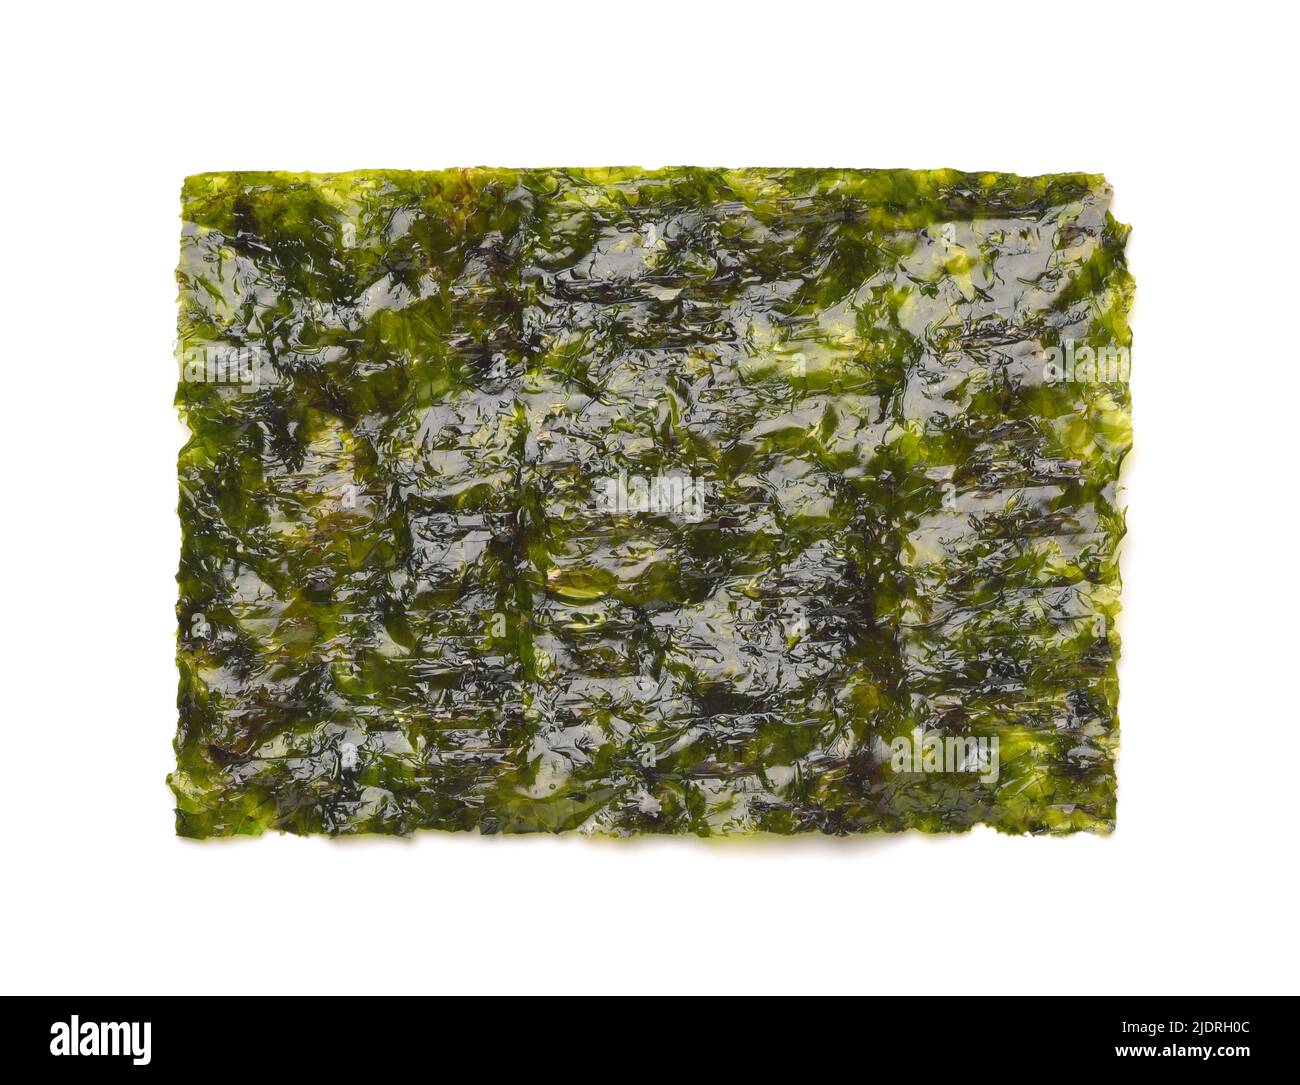 Vista frontale di un foglio di alghe secche tostate gim isolato su bianco Foto Stock